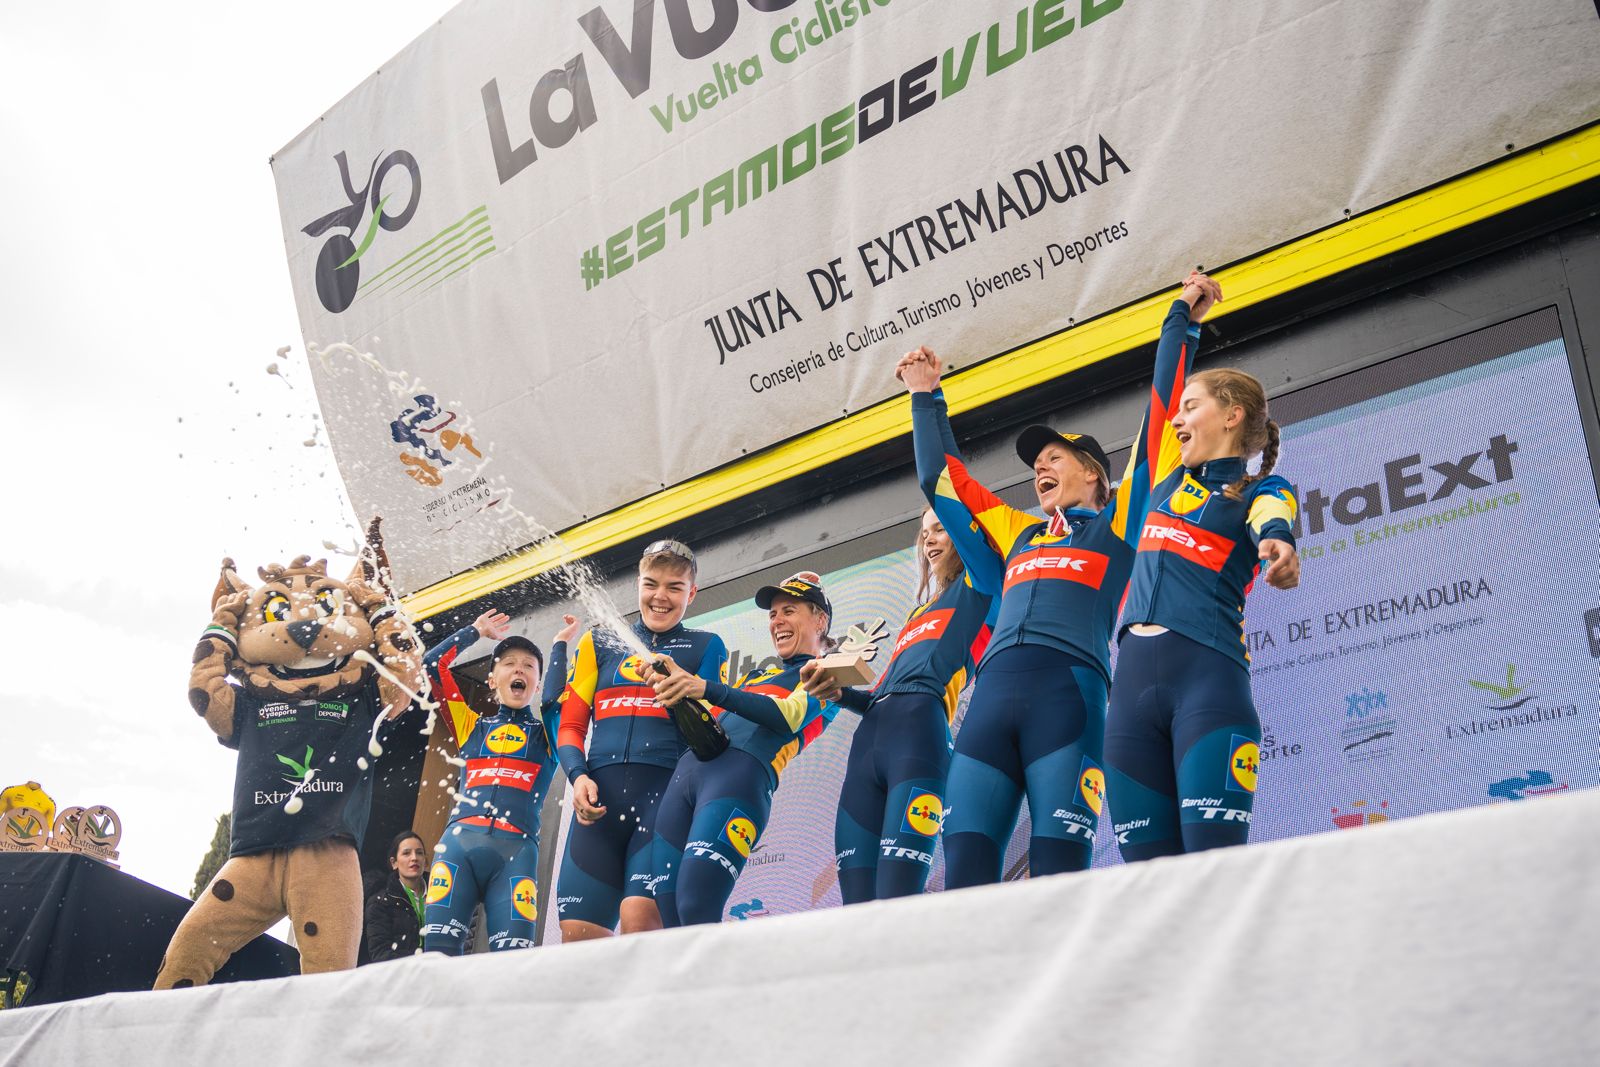 Image 4 of article La holandesa Mareille Meijering gana la Vuelta Ciclista a Extremadura femenina tras tres días de competición